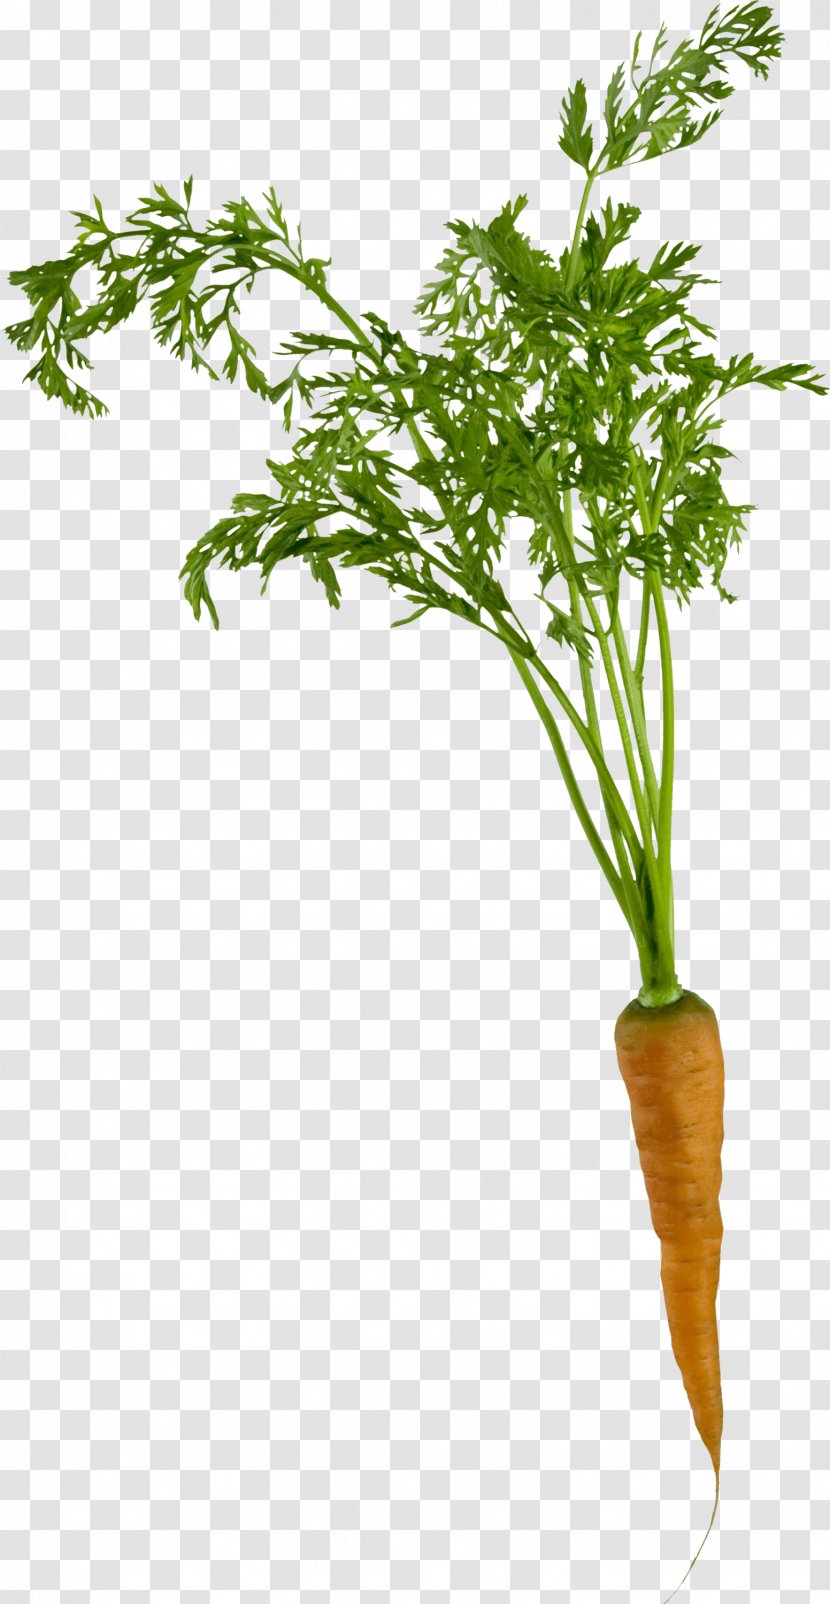 Carrot Clip Art - Root Vegetables - Carrots Transparent PNG